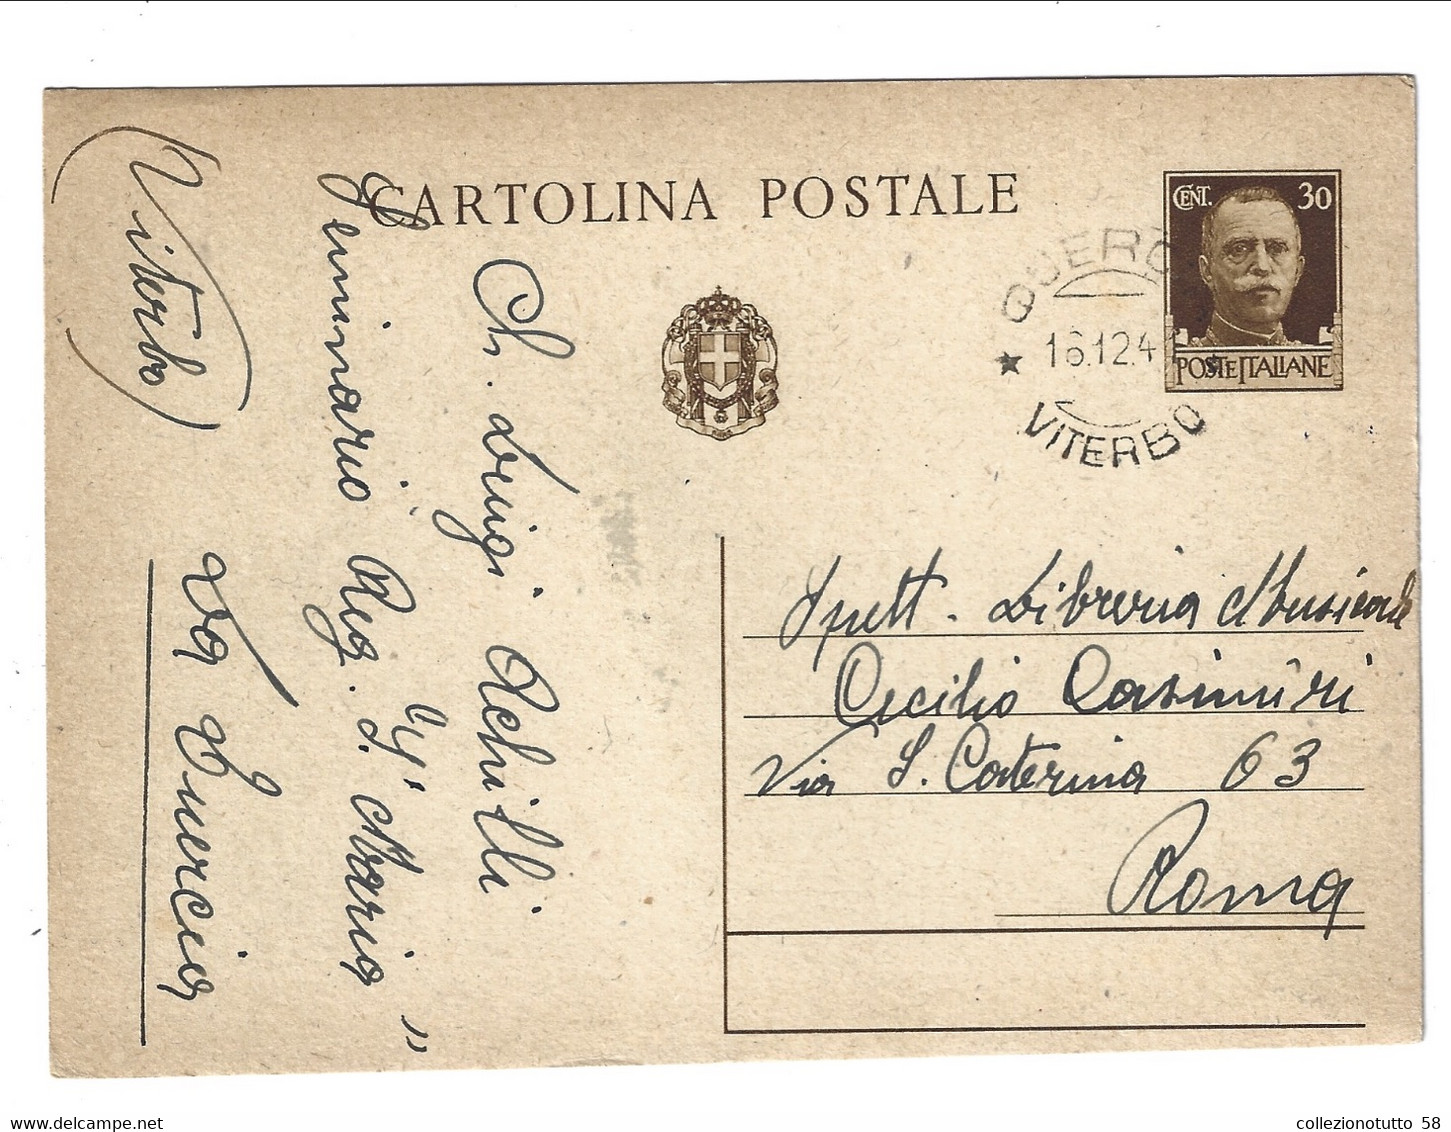 1941 INTERO POSTALE Cartolina Postale Imperiale 30 Cent. Da La Quercia VITERBO Per Roma. - Poststempel